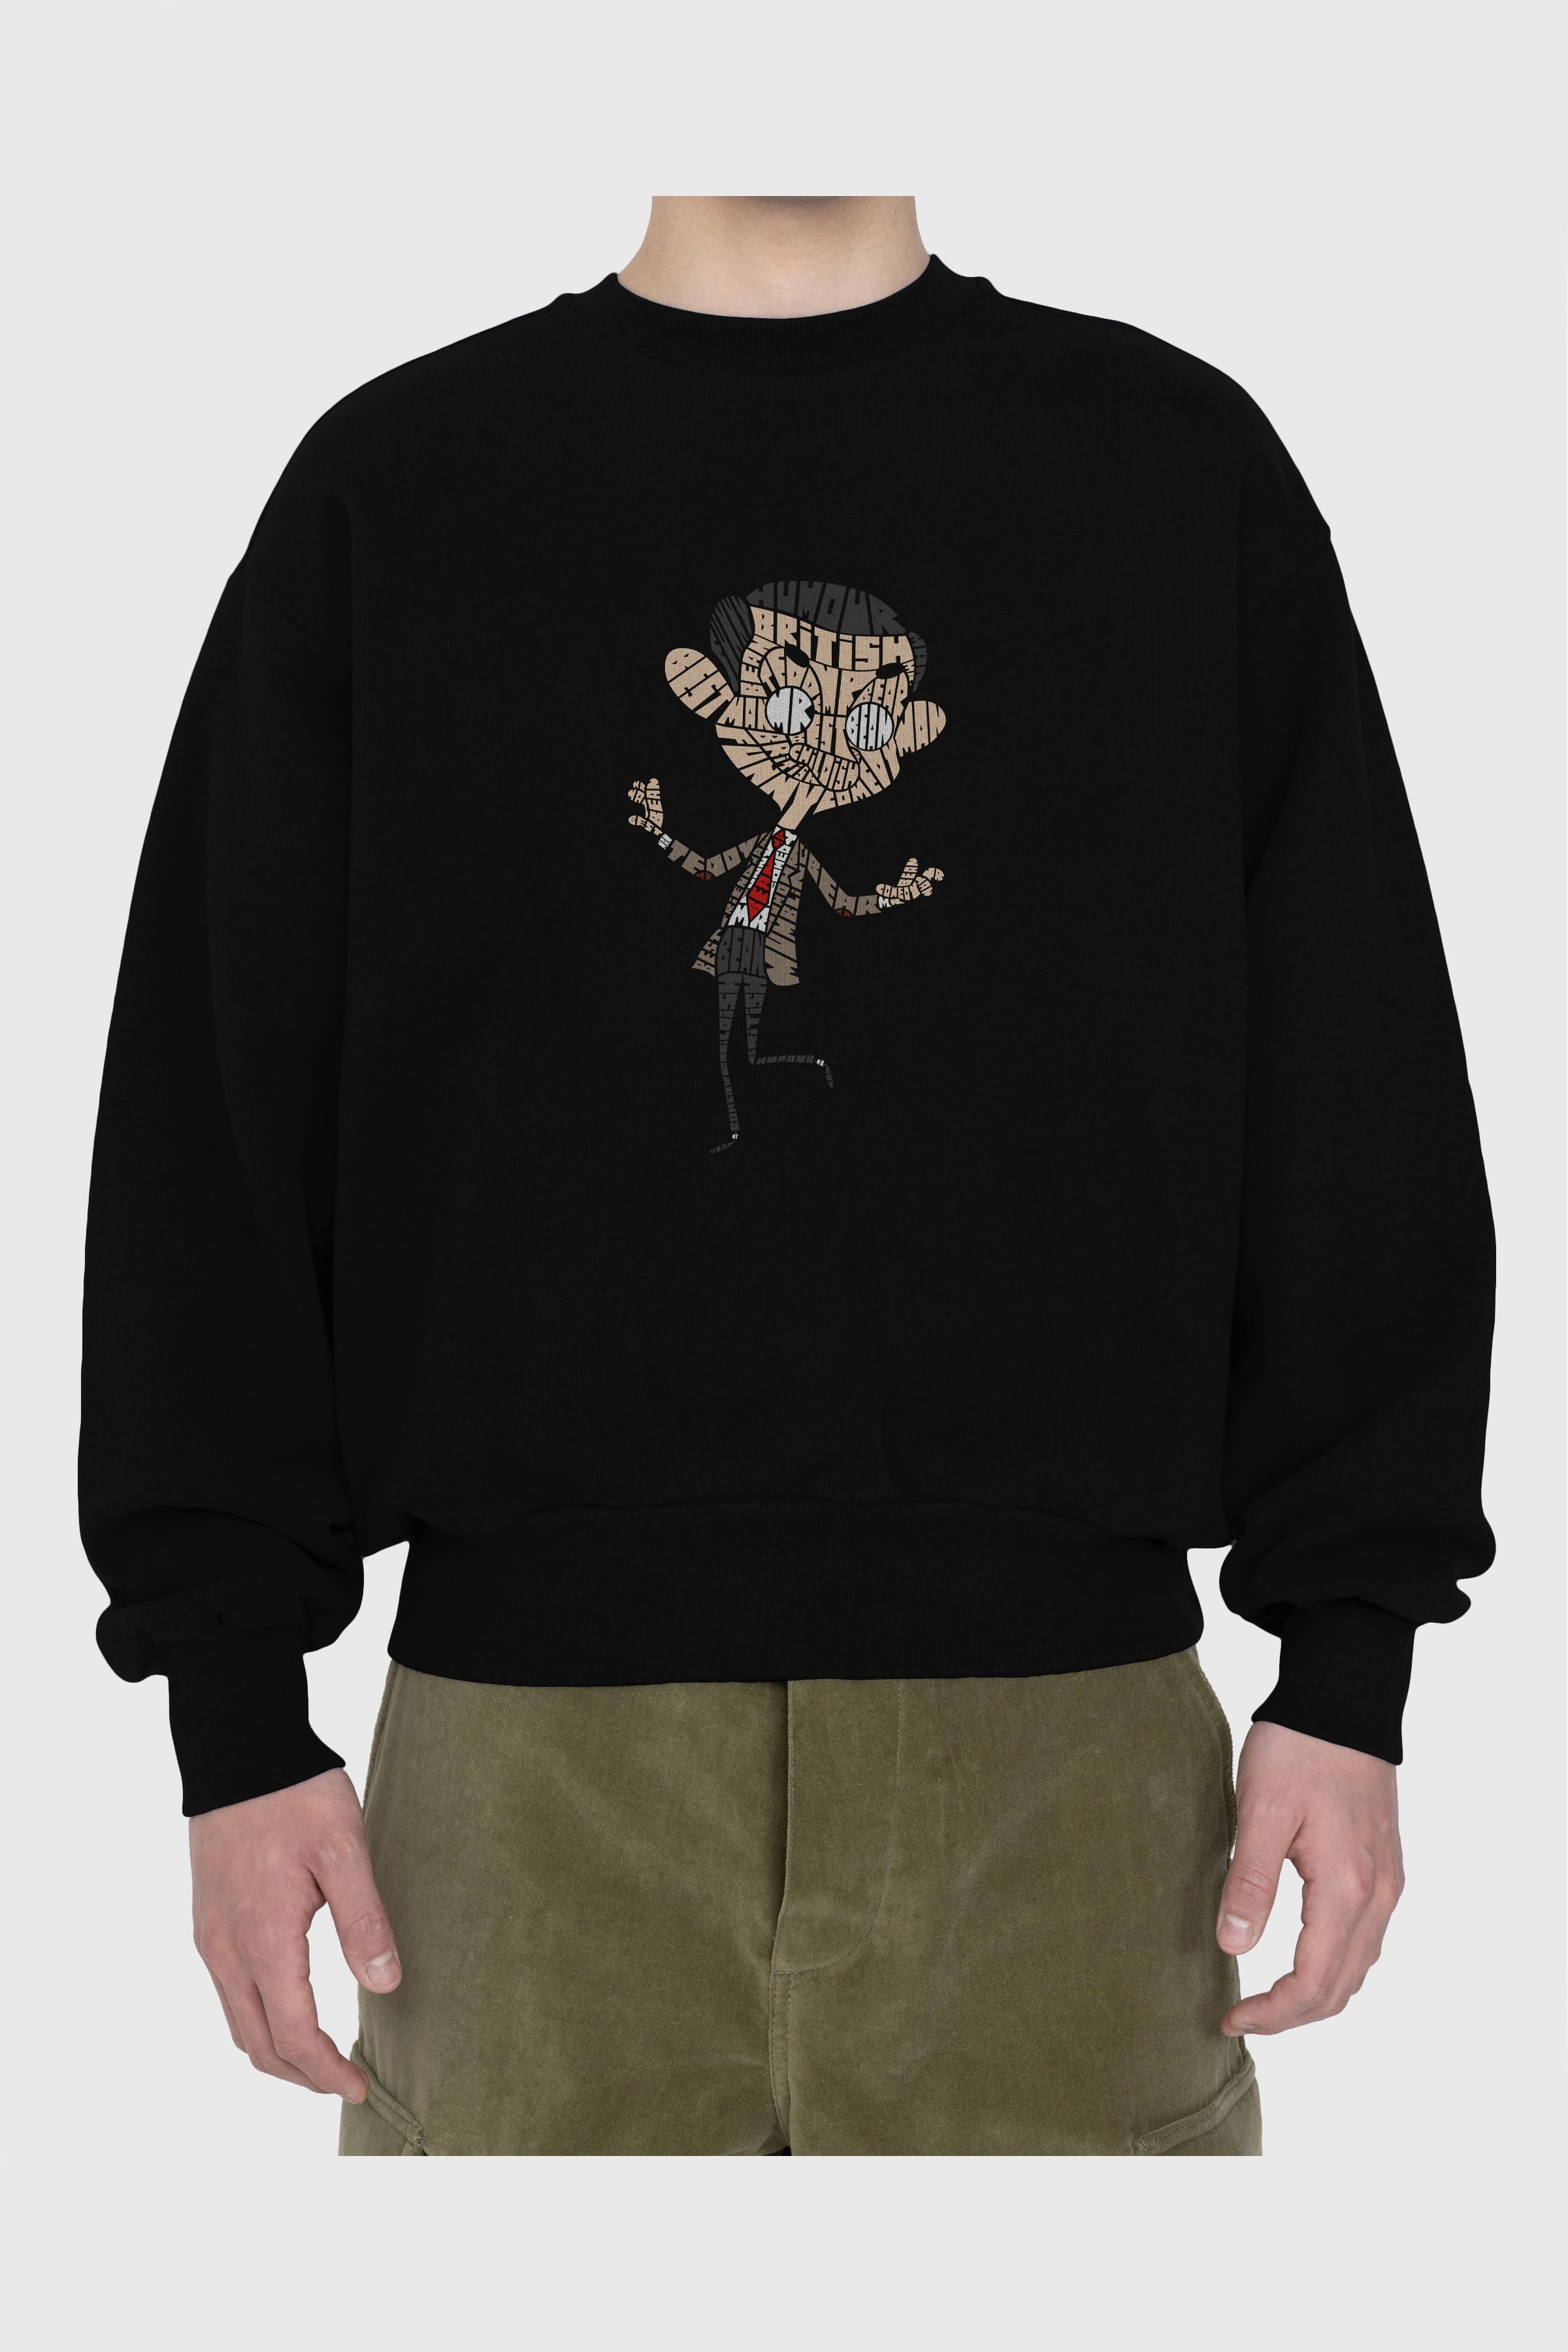 Mr Bean Ön Baskılı Oversize Sweatshirt Erkek Kadın Unisex